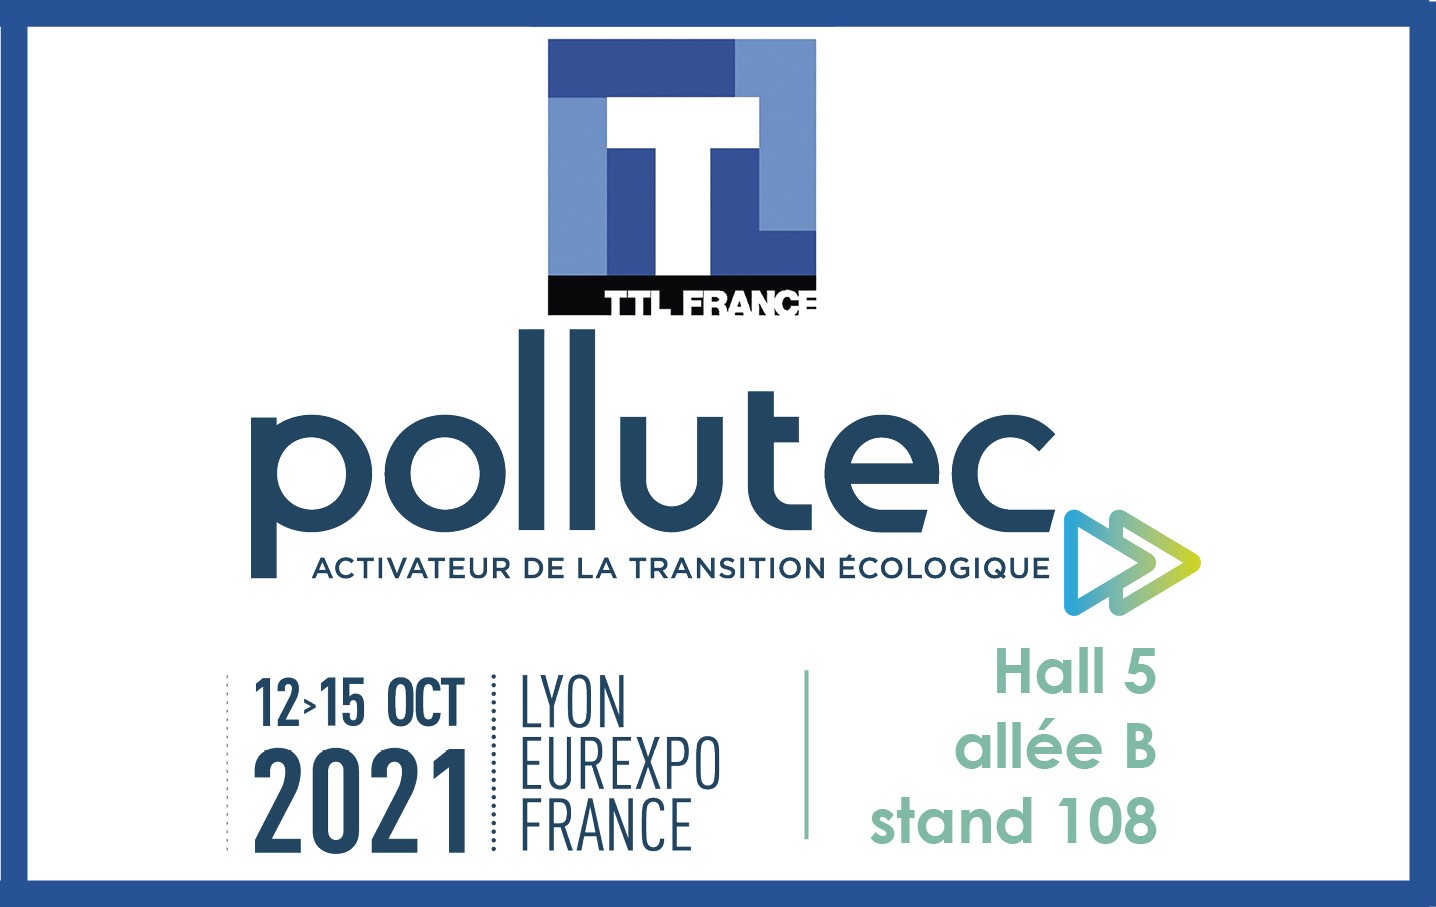 POLLUTEC - 12-15 October 2021